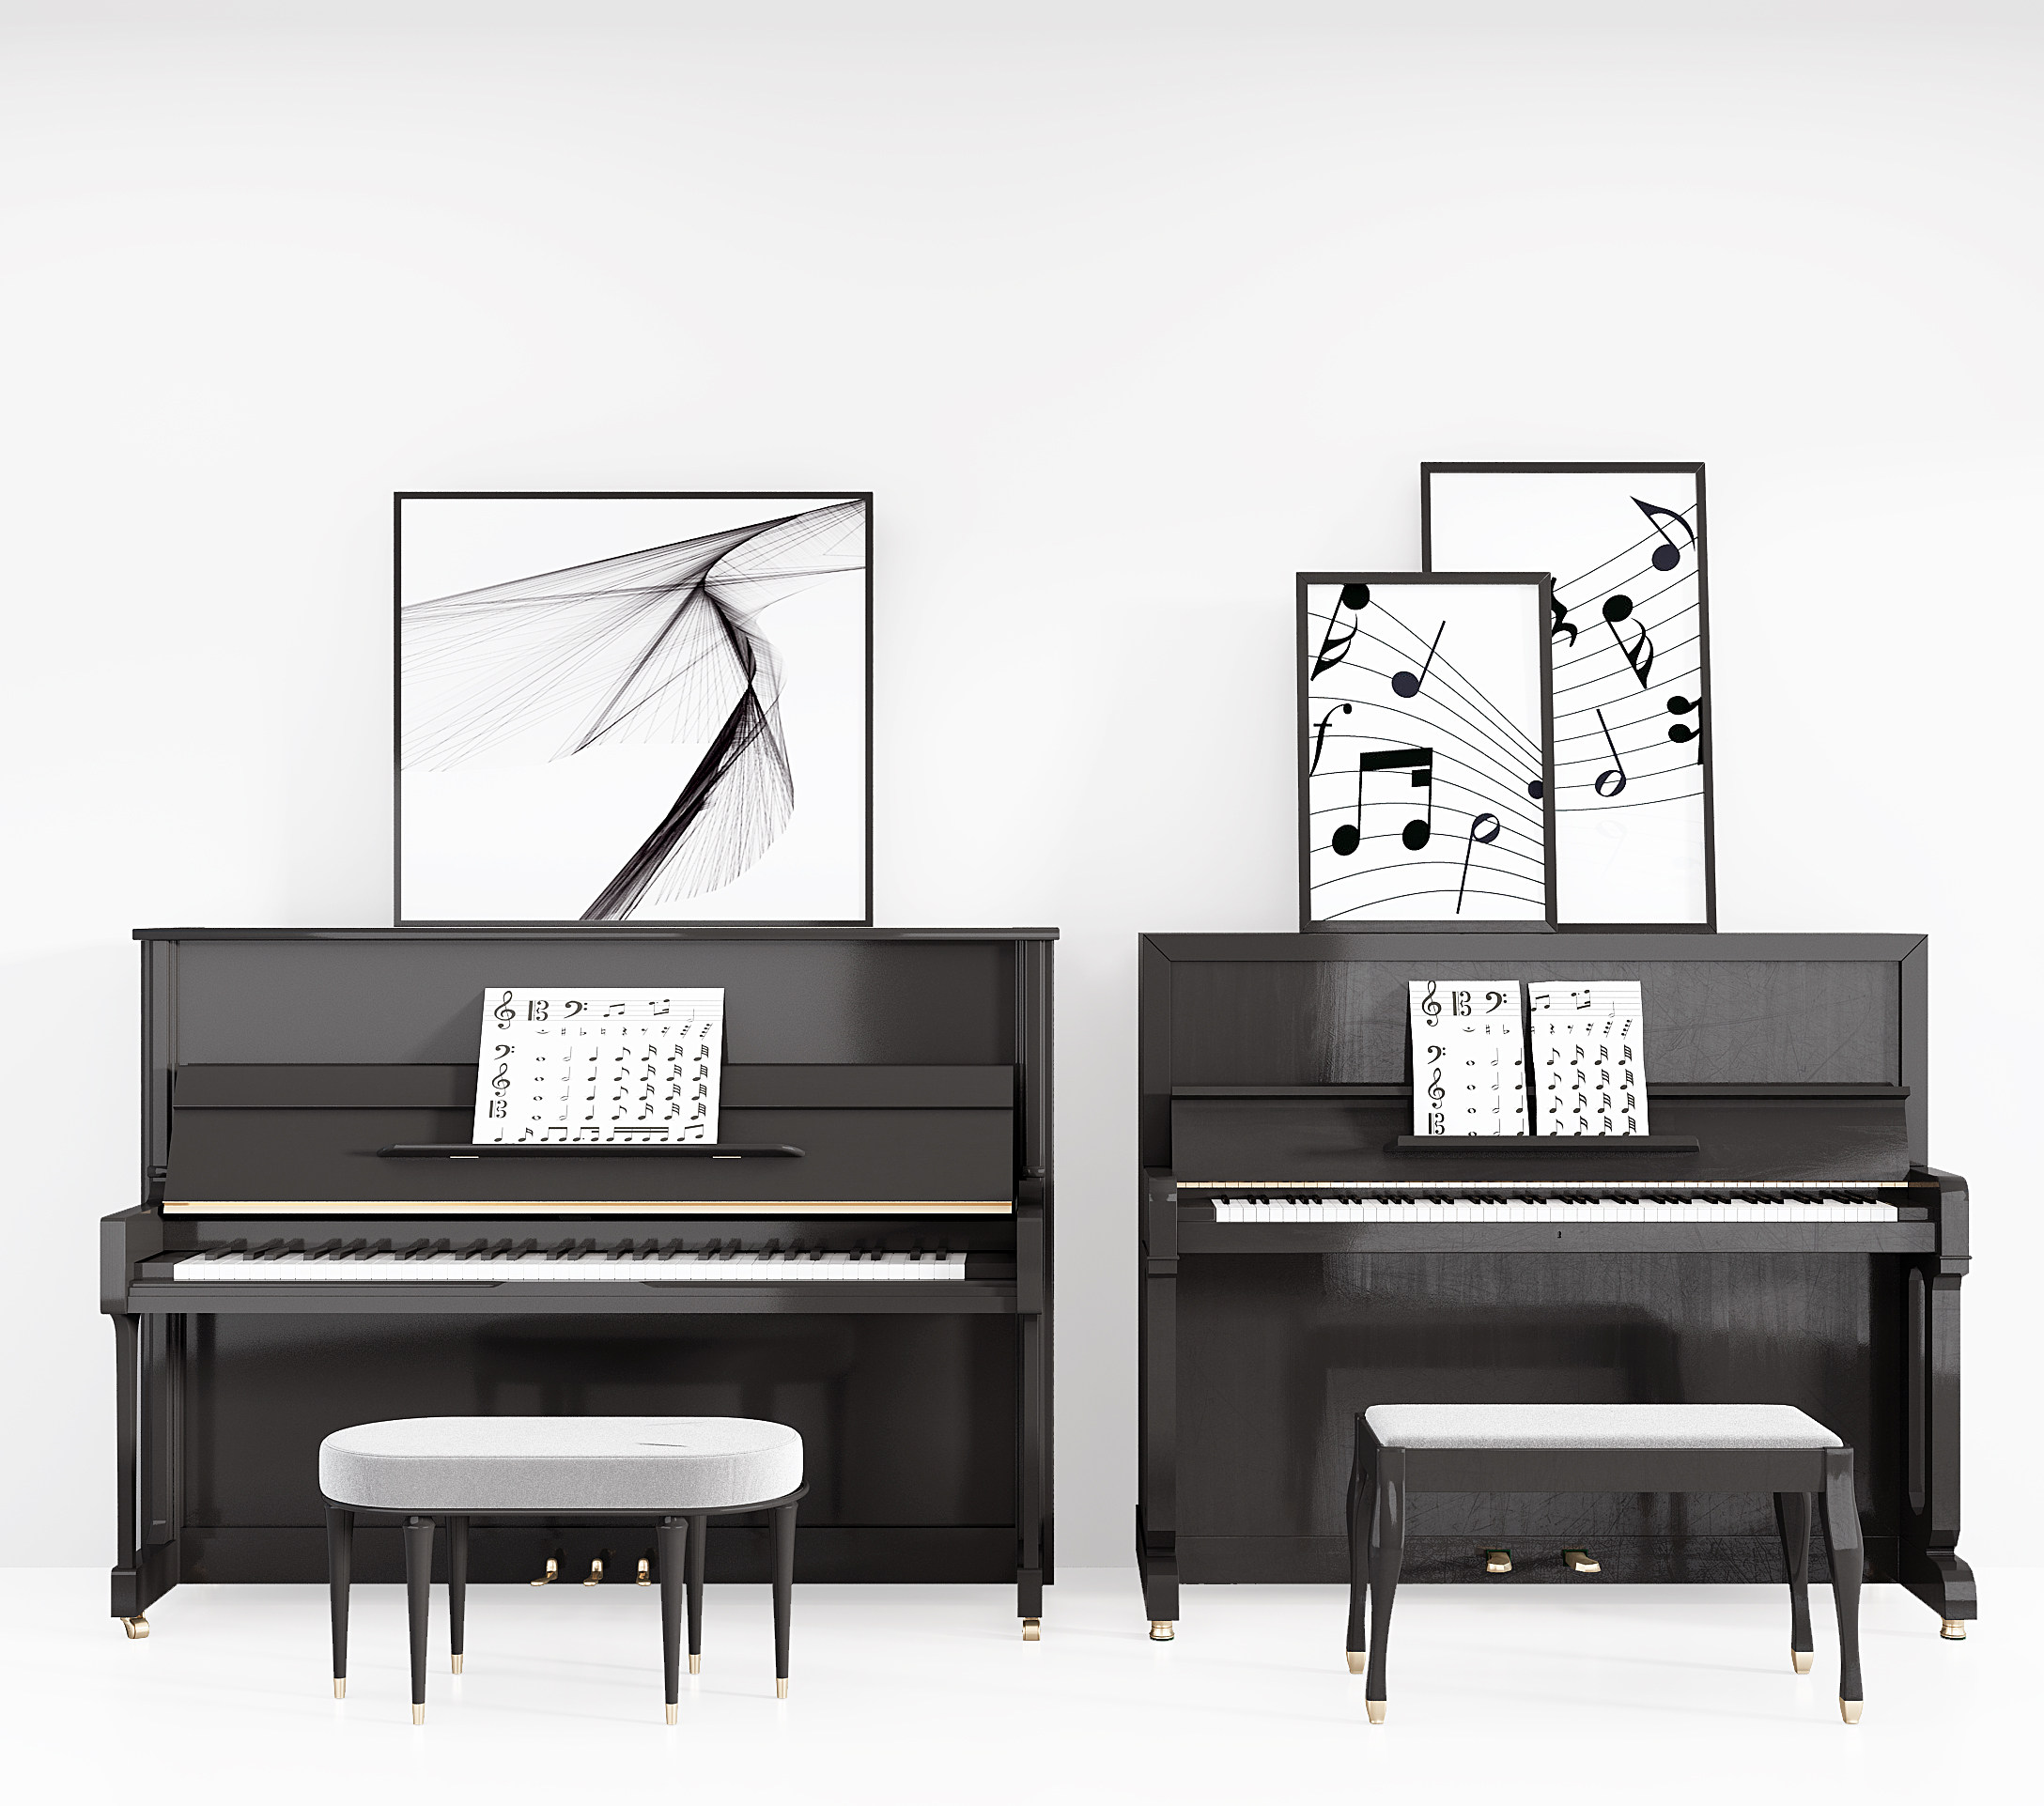 现代美式钢琴,钢琴乐器3d模型下载